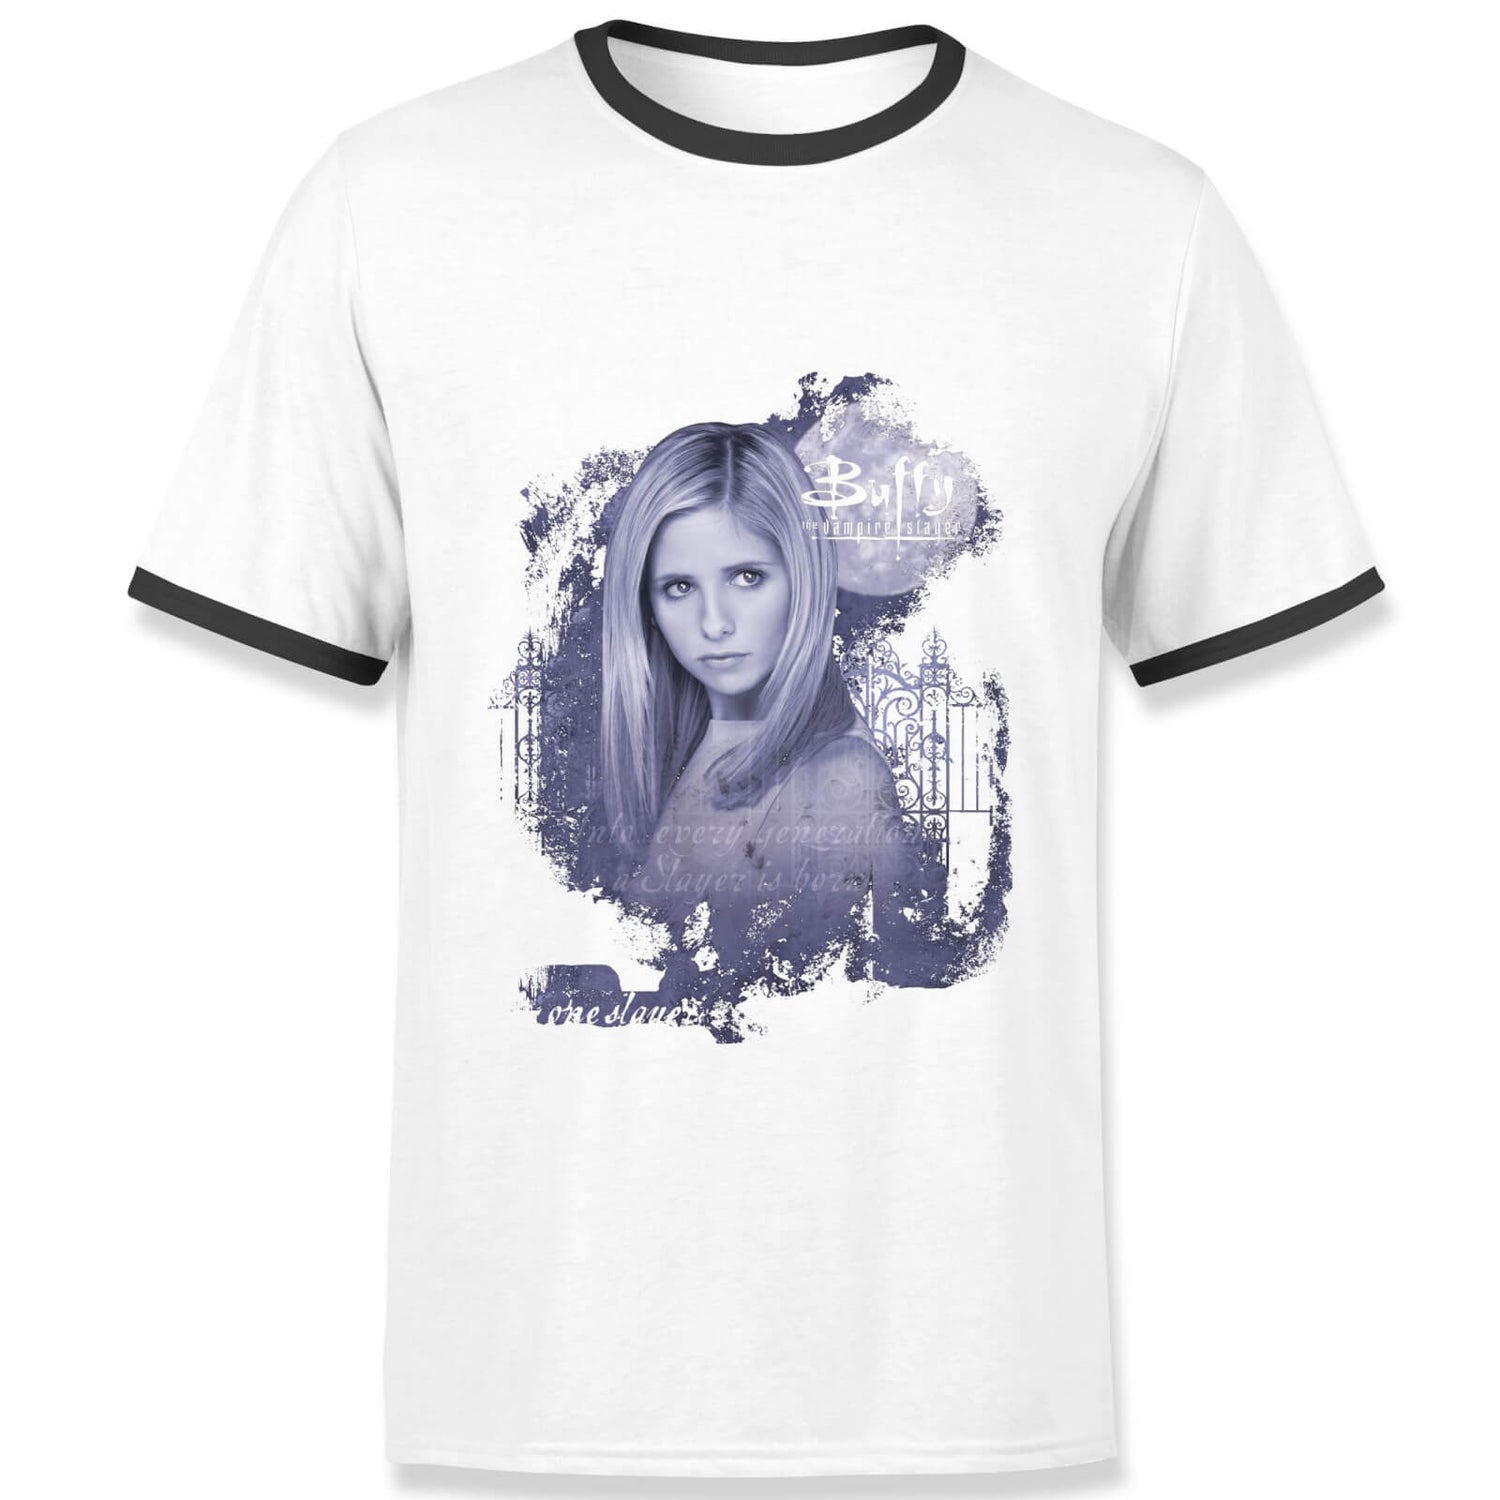 Buffy The Vampire Slayer Face Men's Ringer T-Shirt - Charcoal/Black